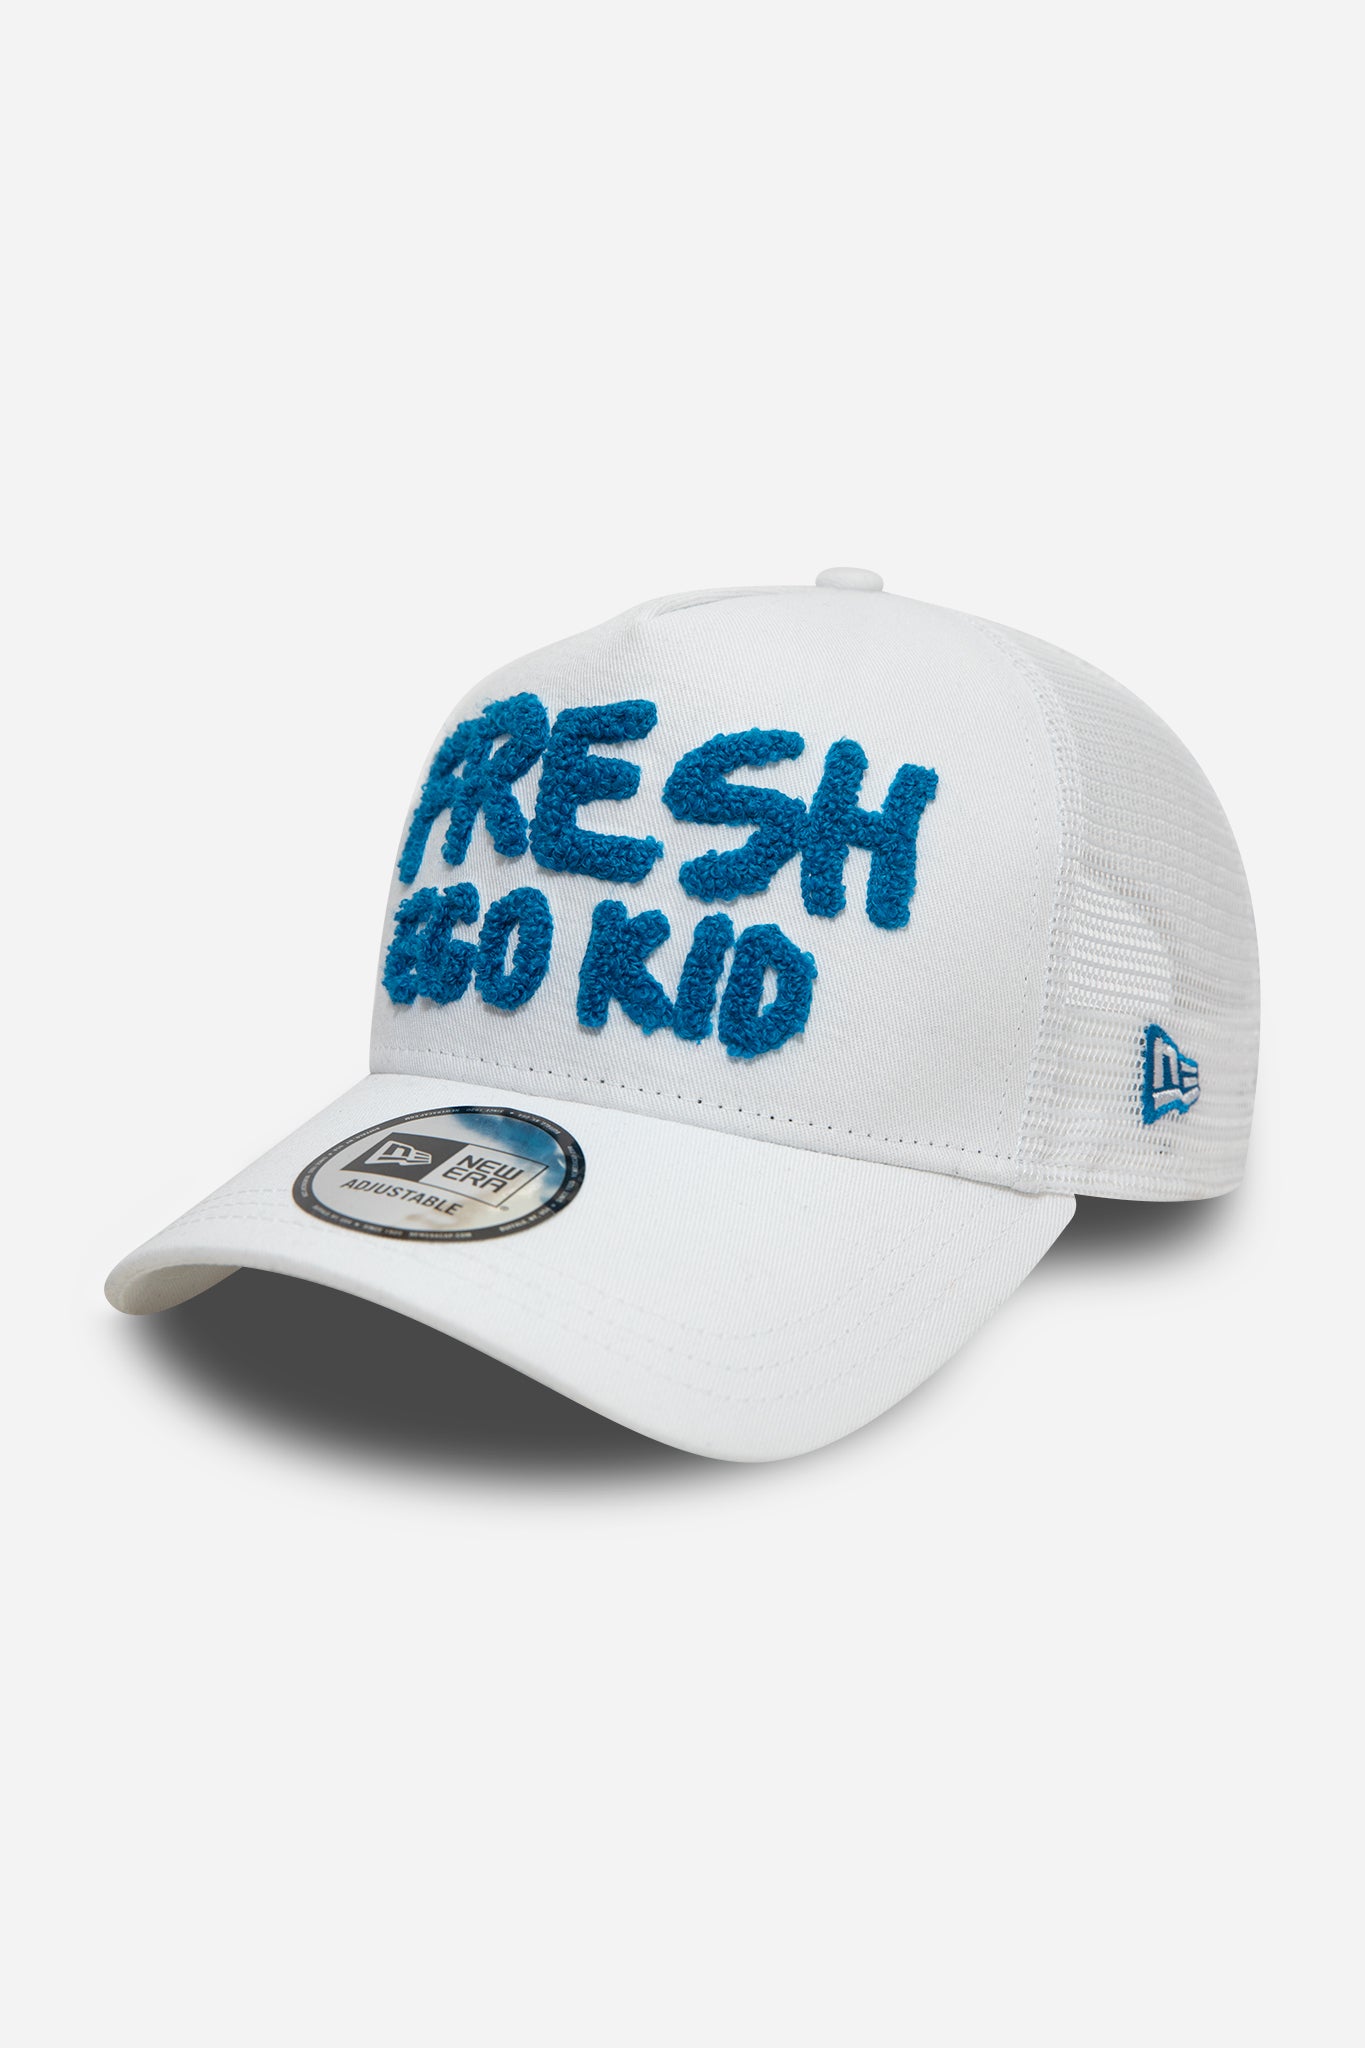 New Era Fresh Ego trucker in white and blue